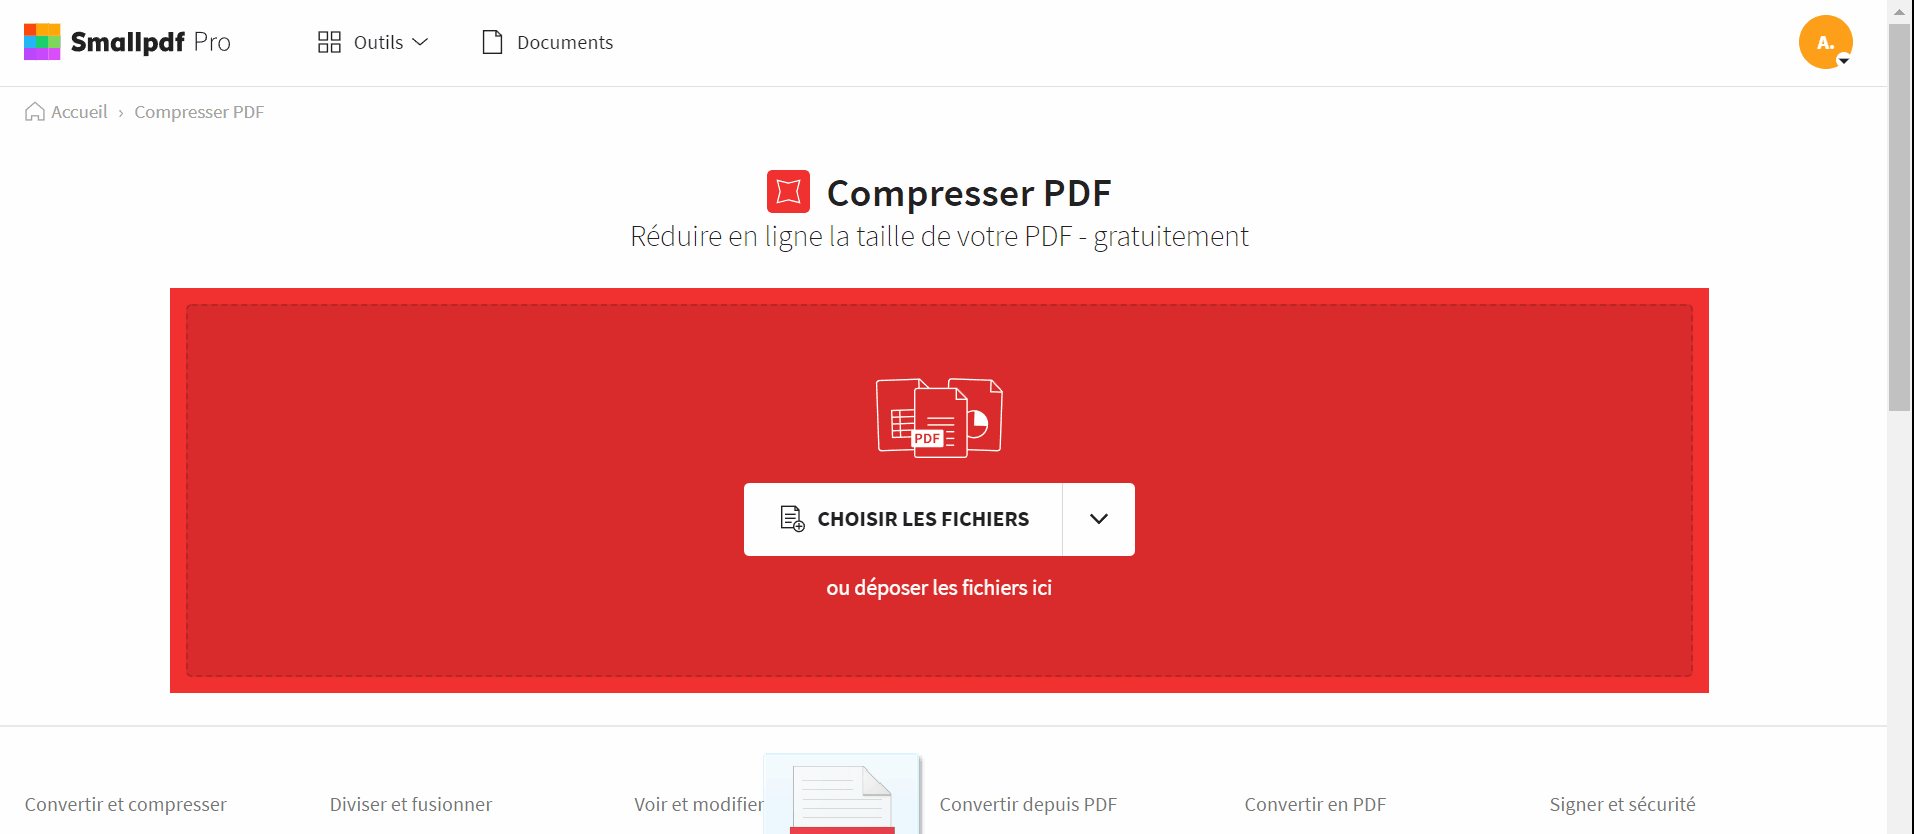 2021-07-08 - Compresse tes PDF pour obtenir un fichier de la taille de ton choix - outil Compresser PDF